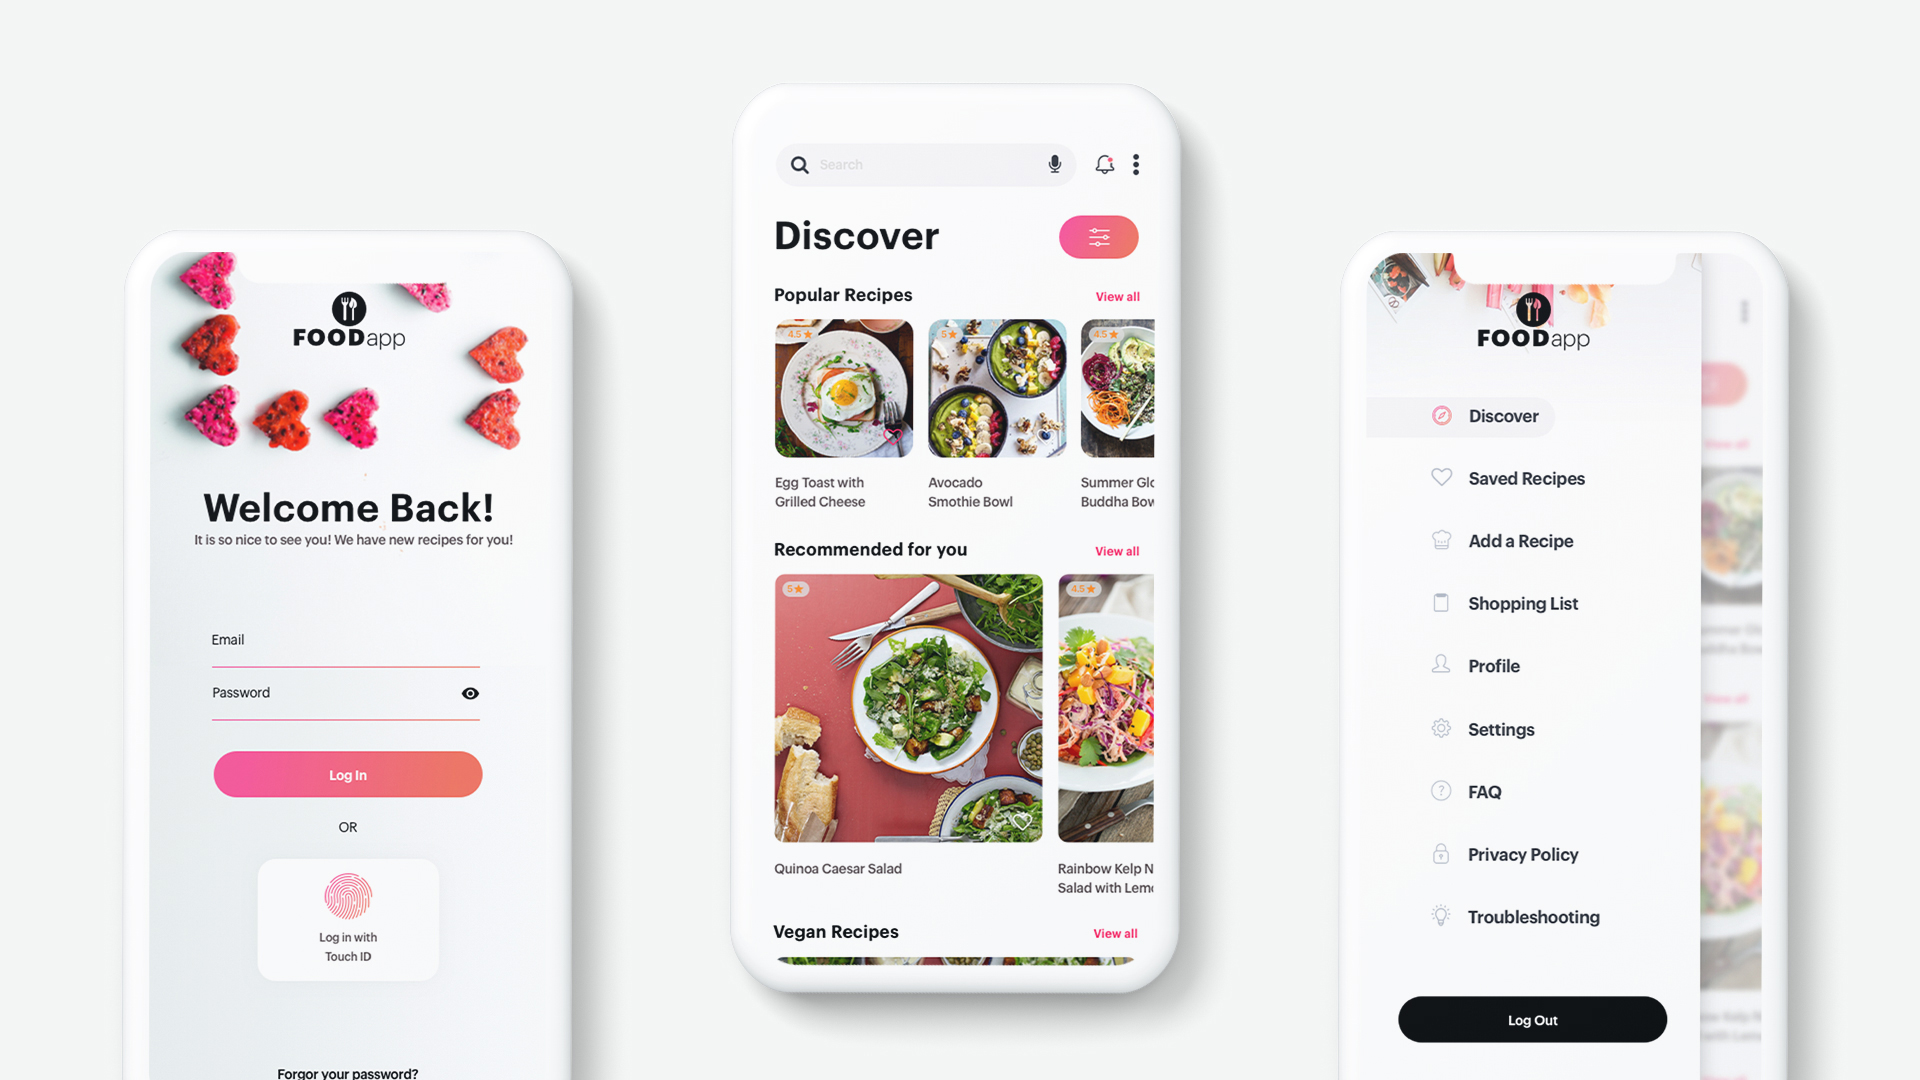 Food App log in, discover, menu